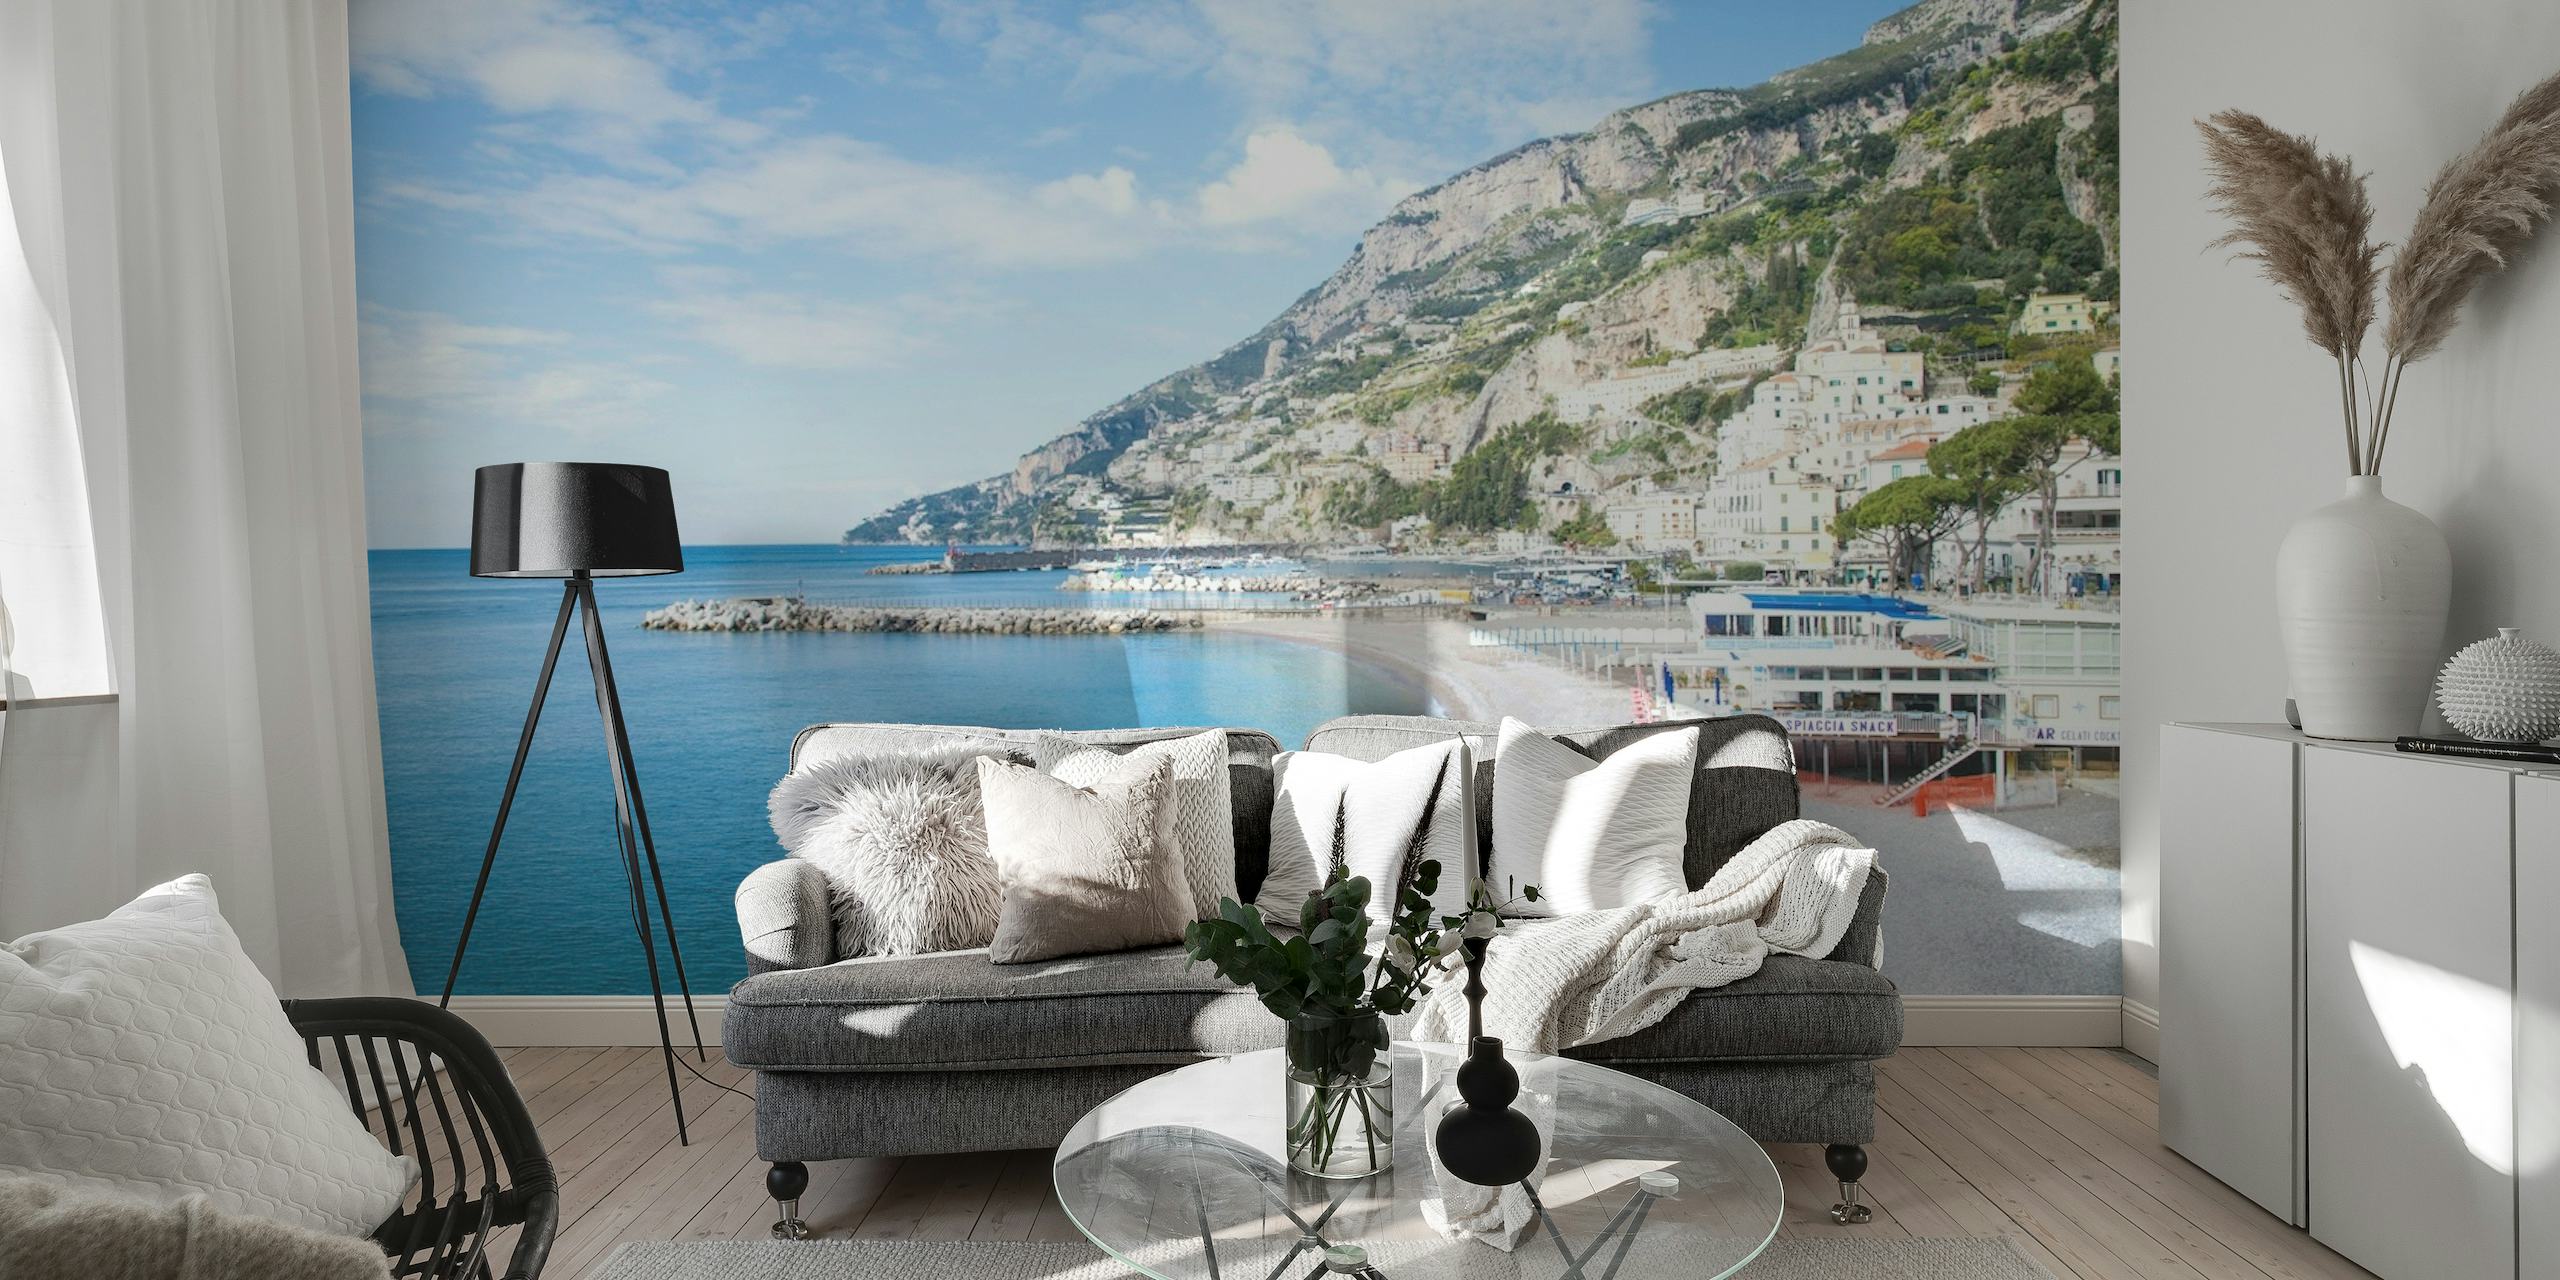 Fototapeta Bella Amalfi 1 przedstawiająca Wybrzeże Amalfi z czystym, błękitnym morzem i budynkami na klifach